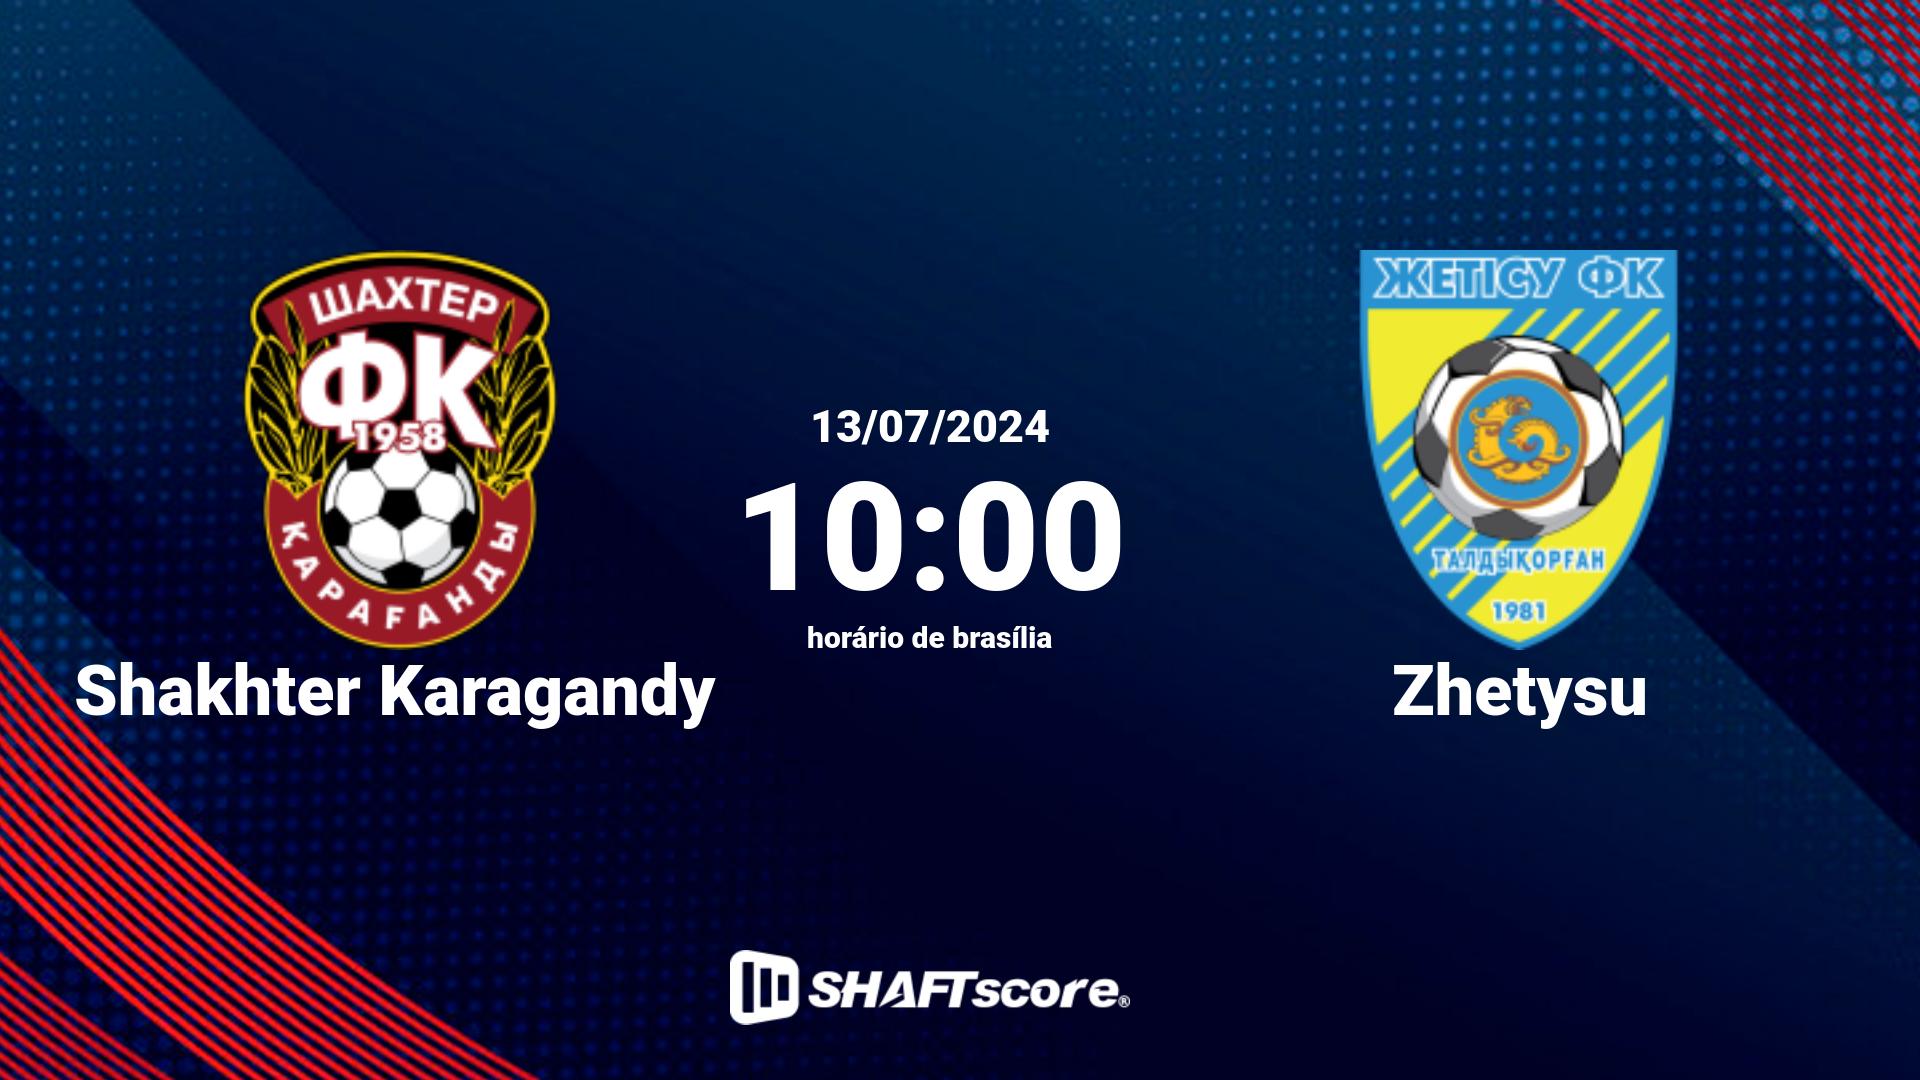 Estatísticas do jogo Shakhter Karagandy vs Zhetysu 13.07 10:00